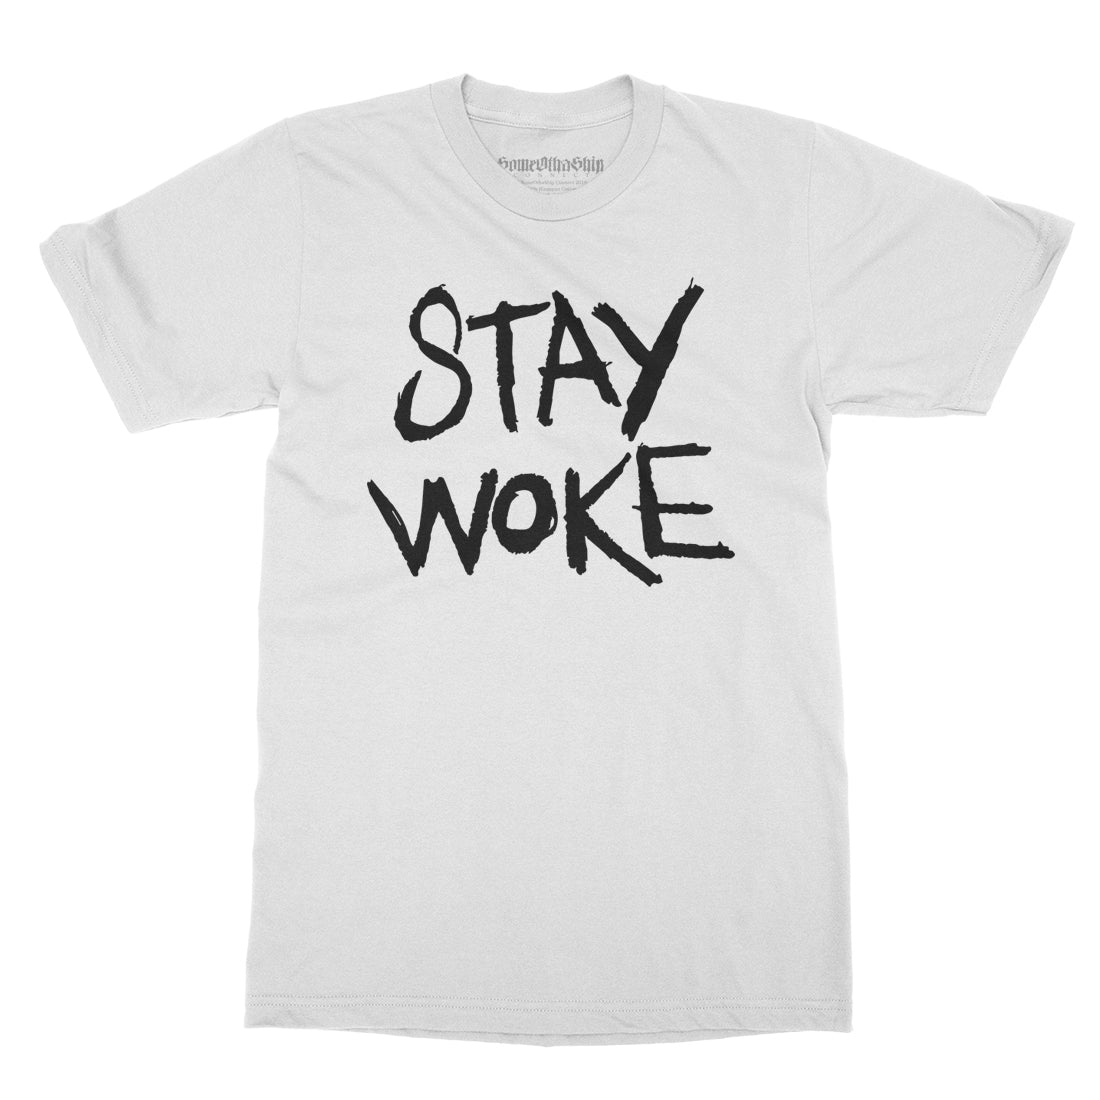 SOMEOTHASHIP - Stay Woke - White Tee